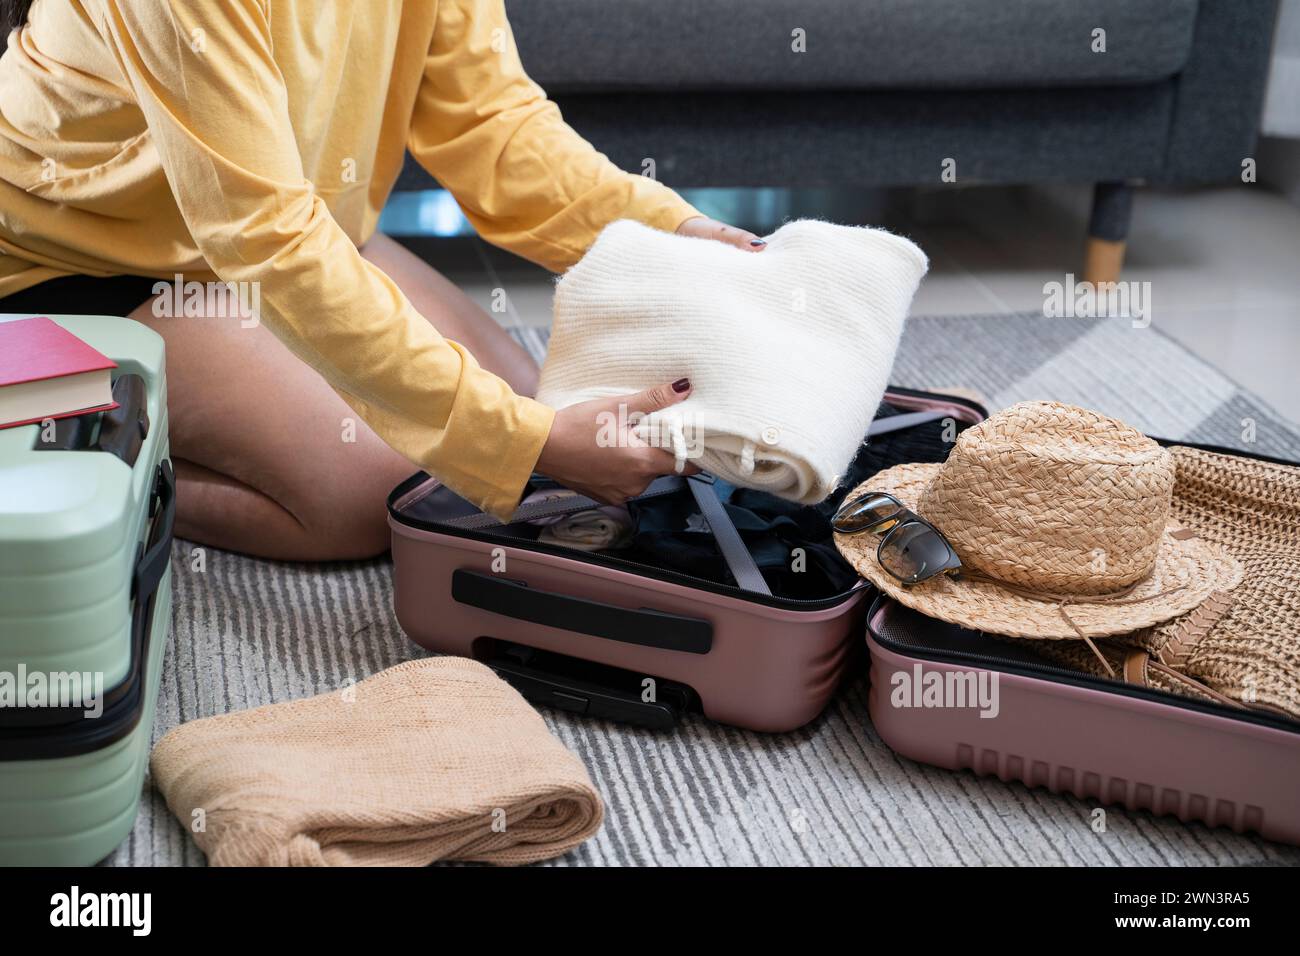 Junge Frauen, die sich auf den Urlaub vorbereiten. Reiseaccessoires. Reise- und Urlaubskonzept. Stockfoto